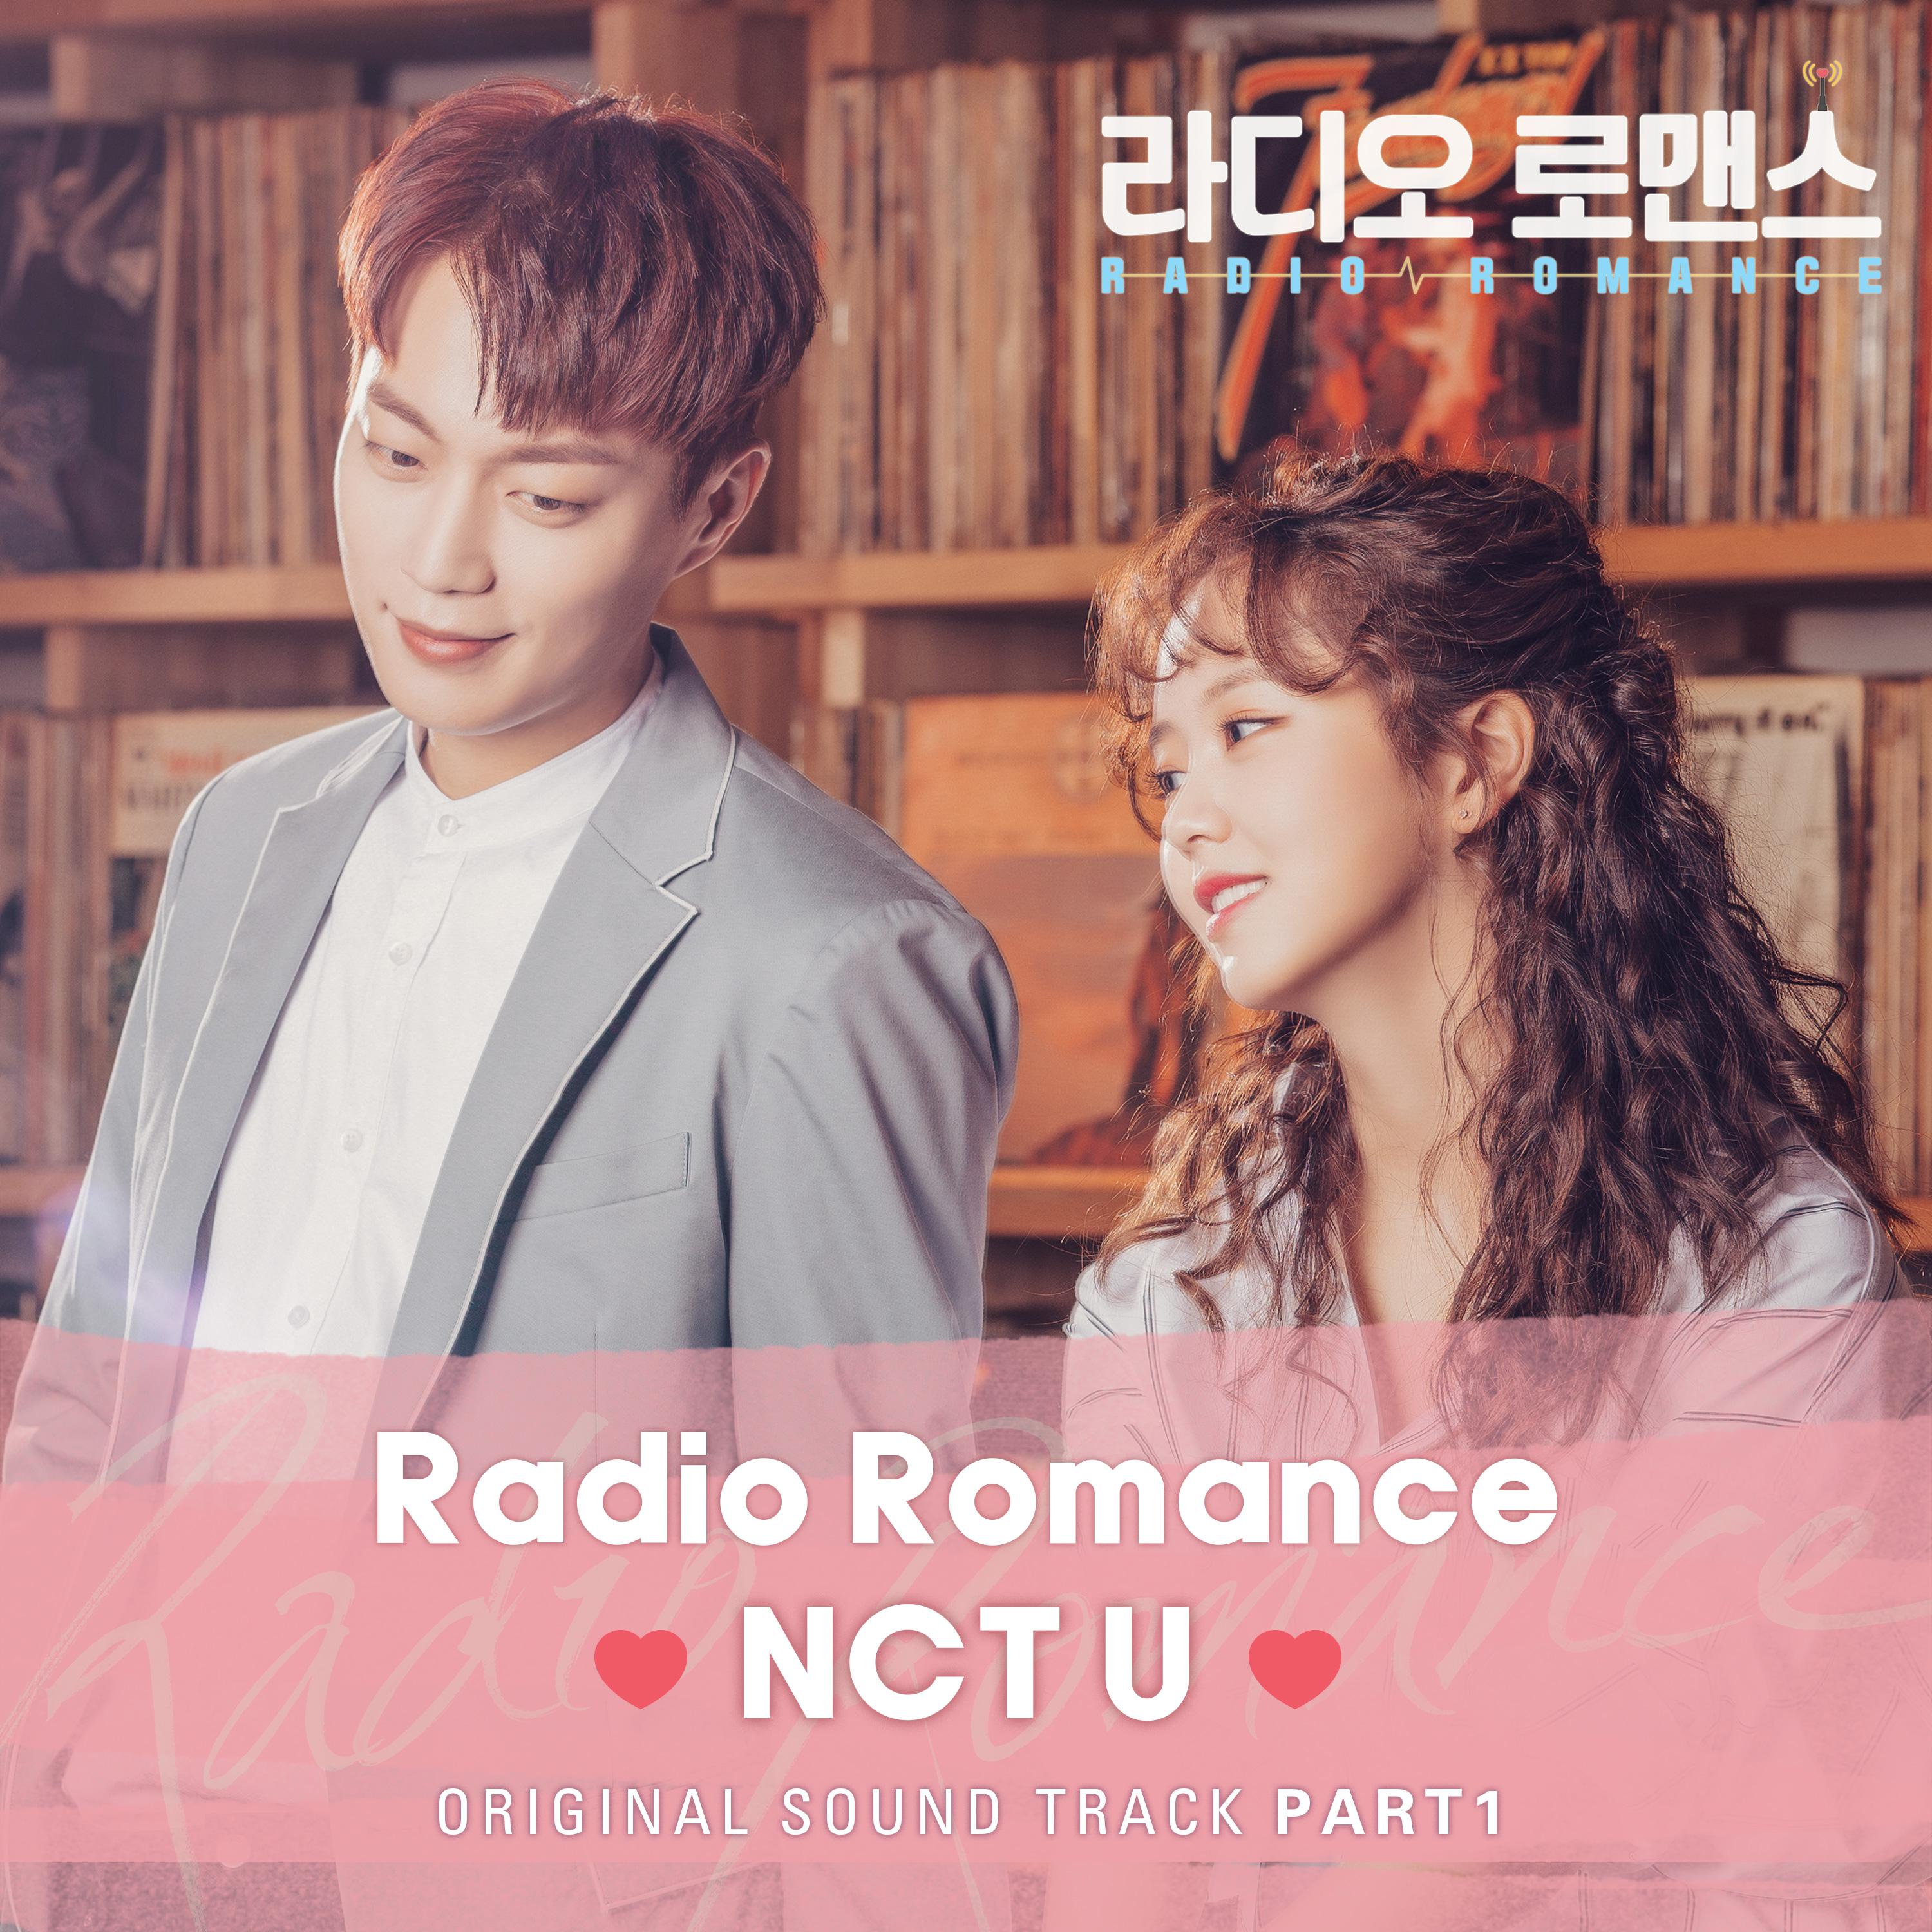 Radio Romance歌词 歌手泰一 / 道英-专辑라디오로맨스 OST Part.1-单曲《Radio Romance》LRC歌词下载